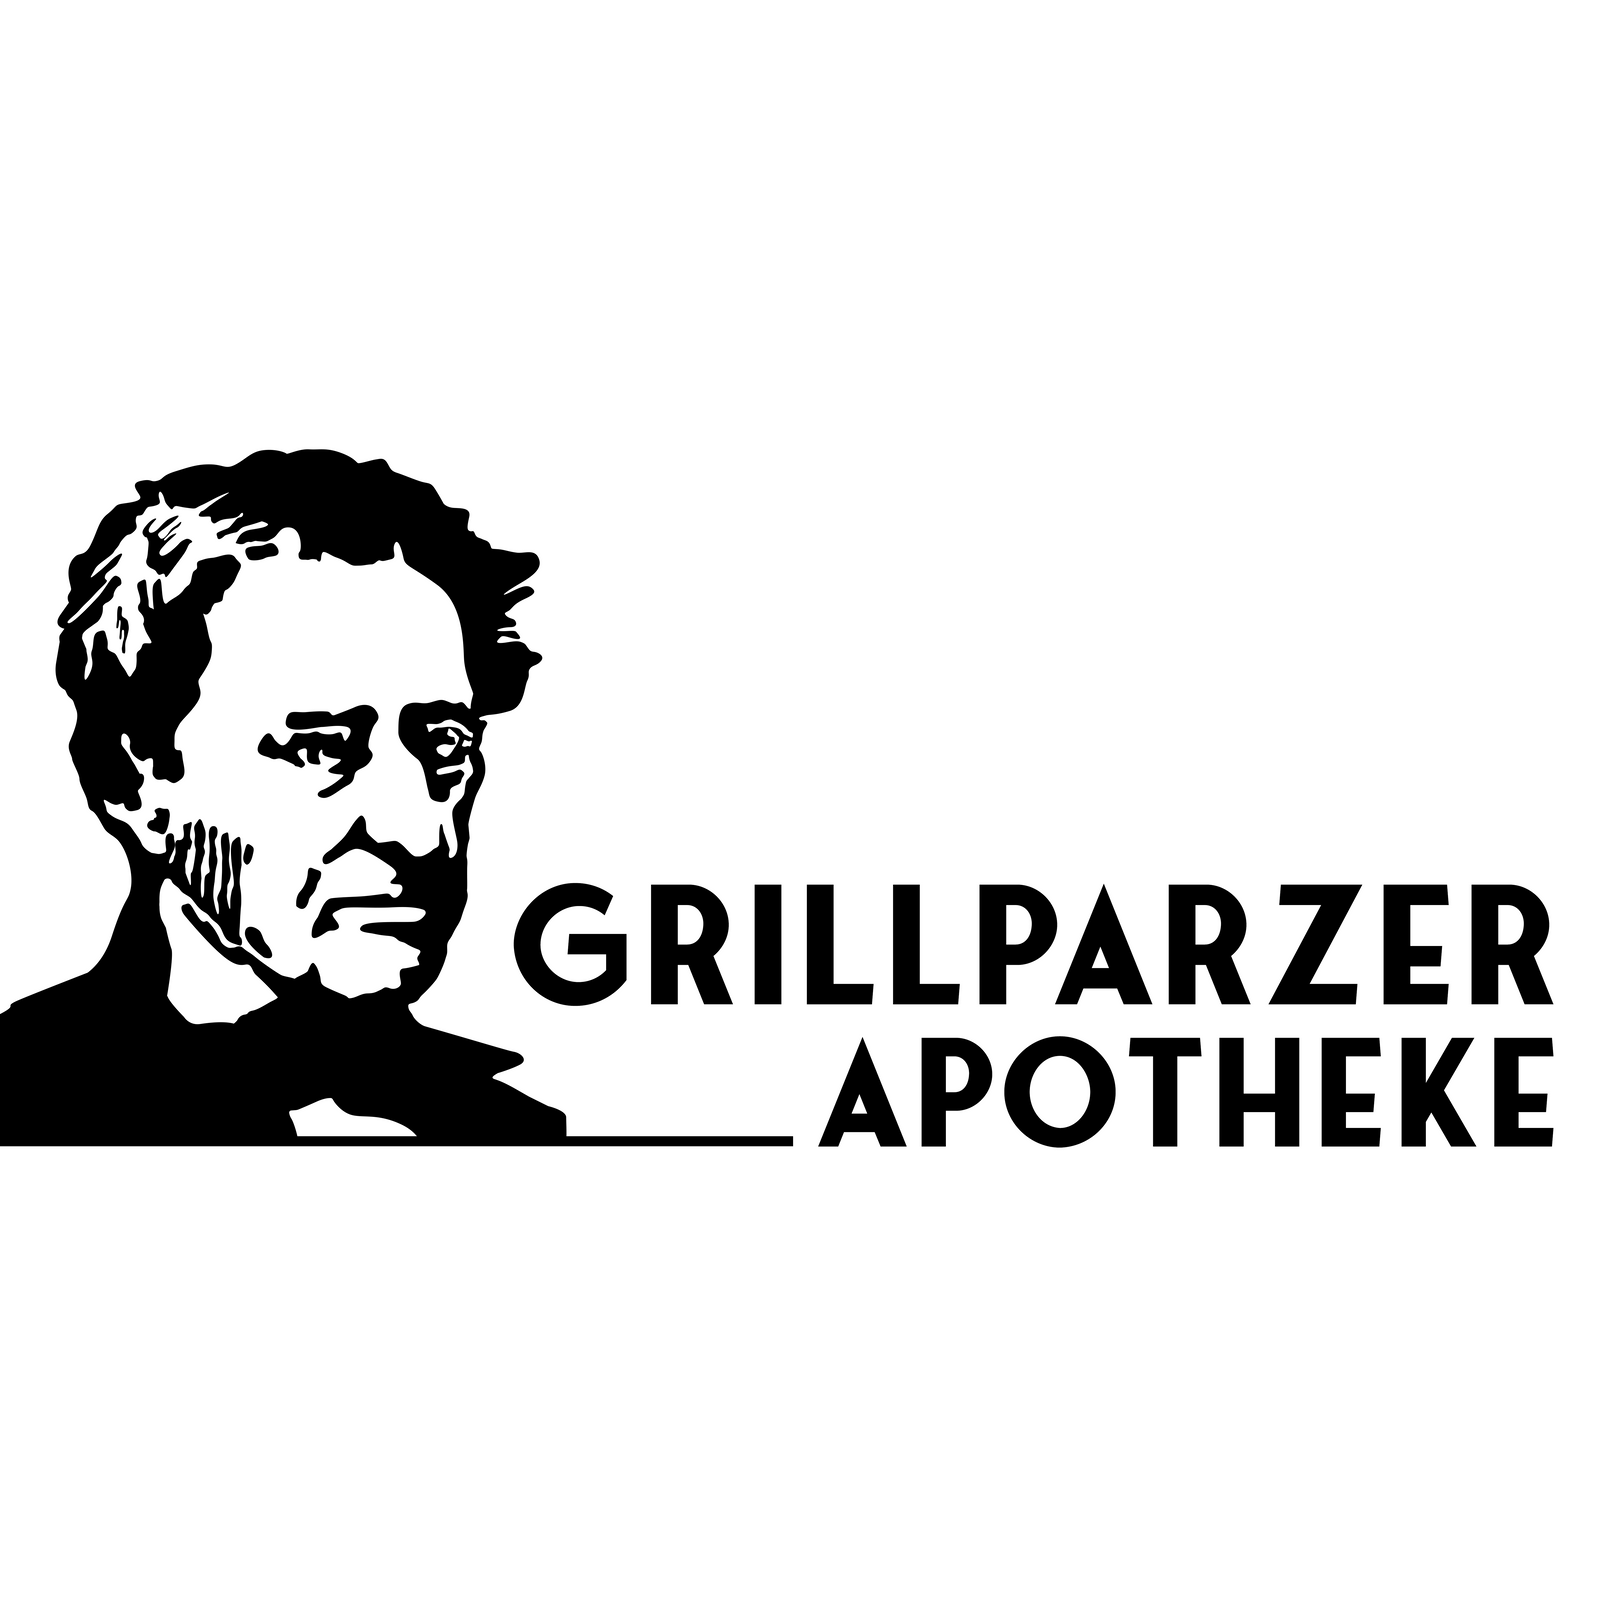 Grillparzer Apotheke in München